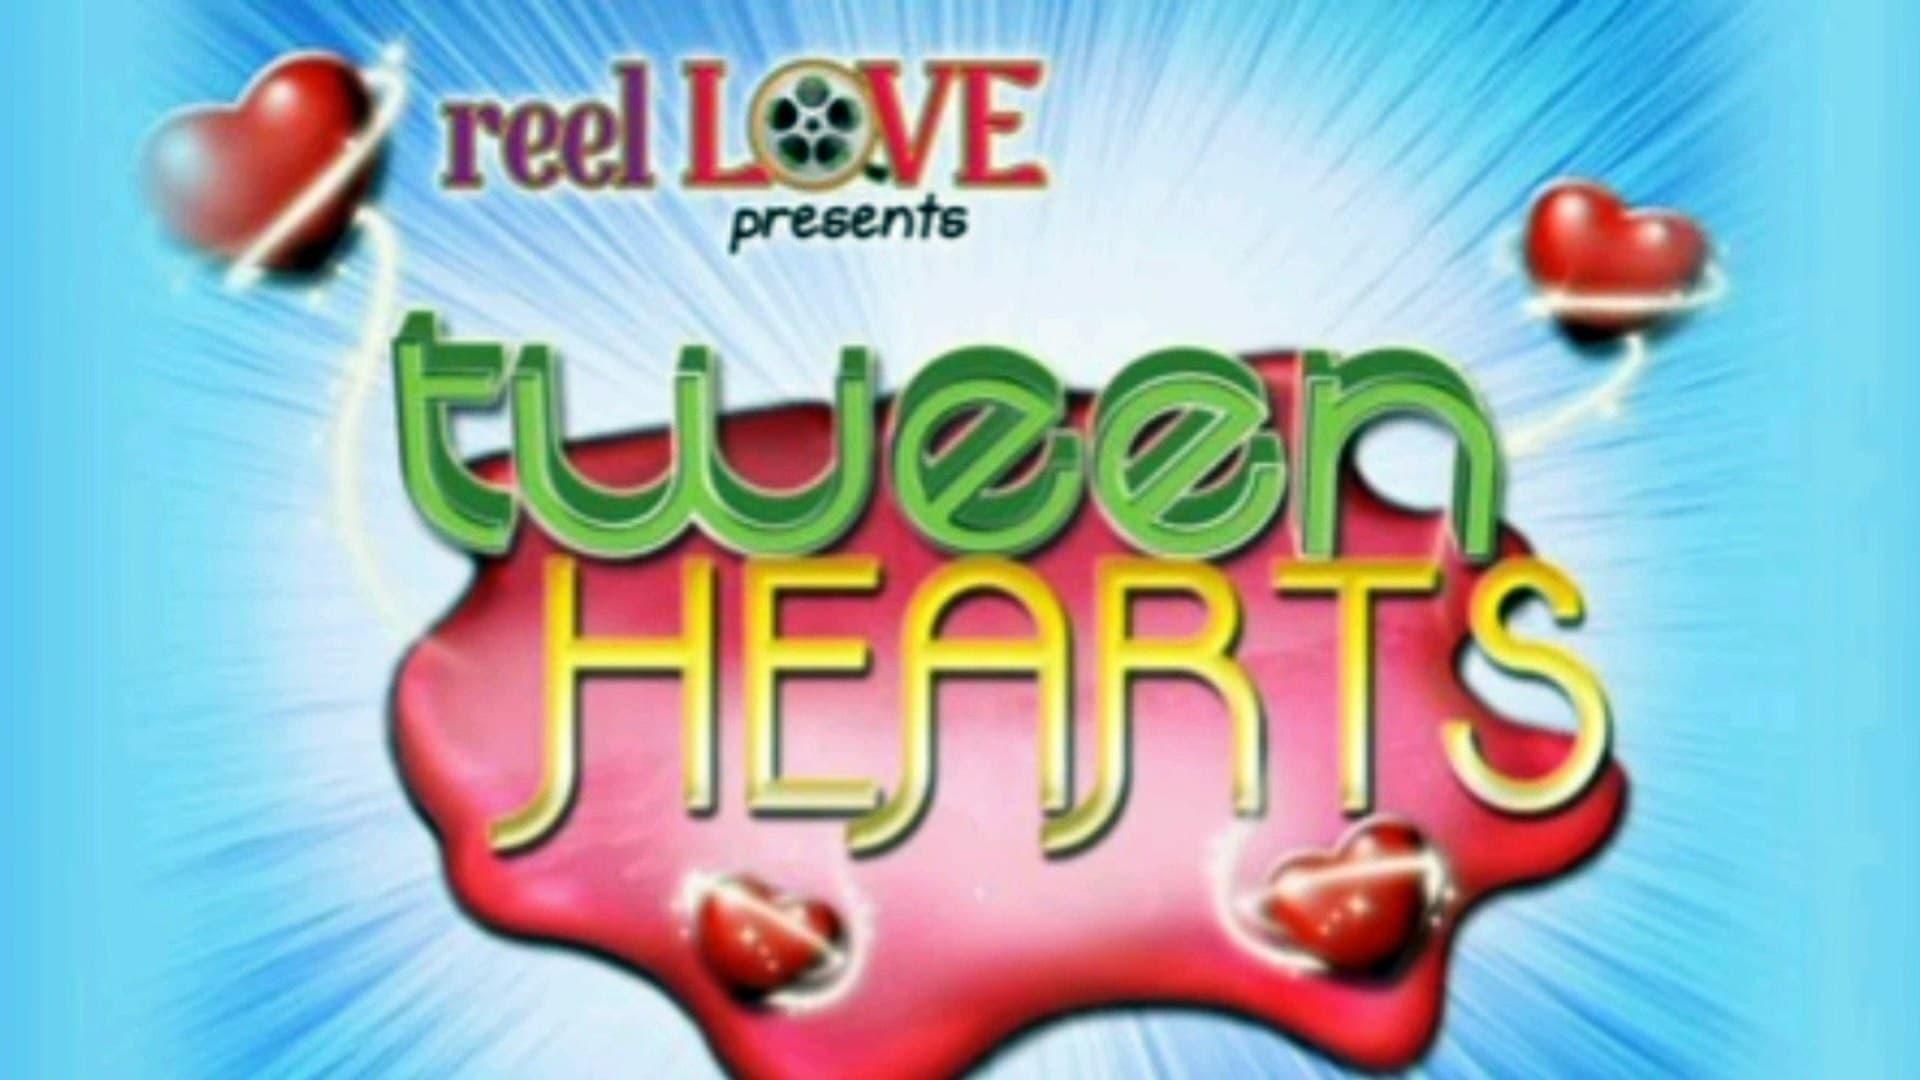 Reel Love Presents Tween Hearts backdrop